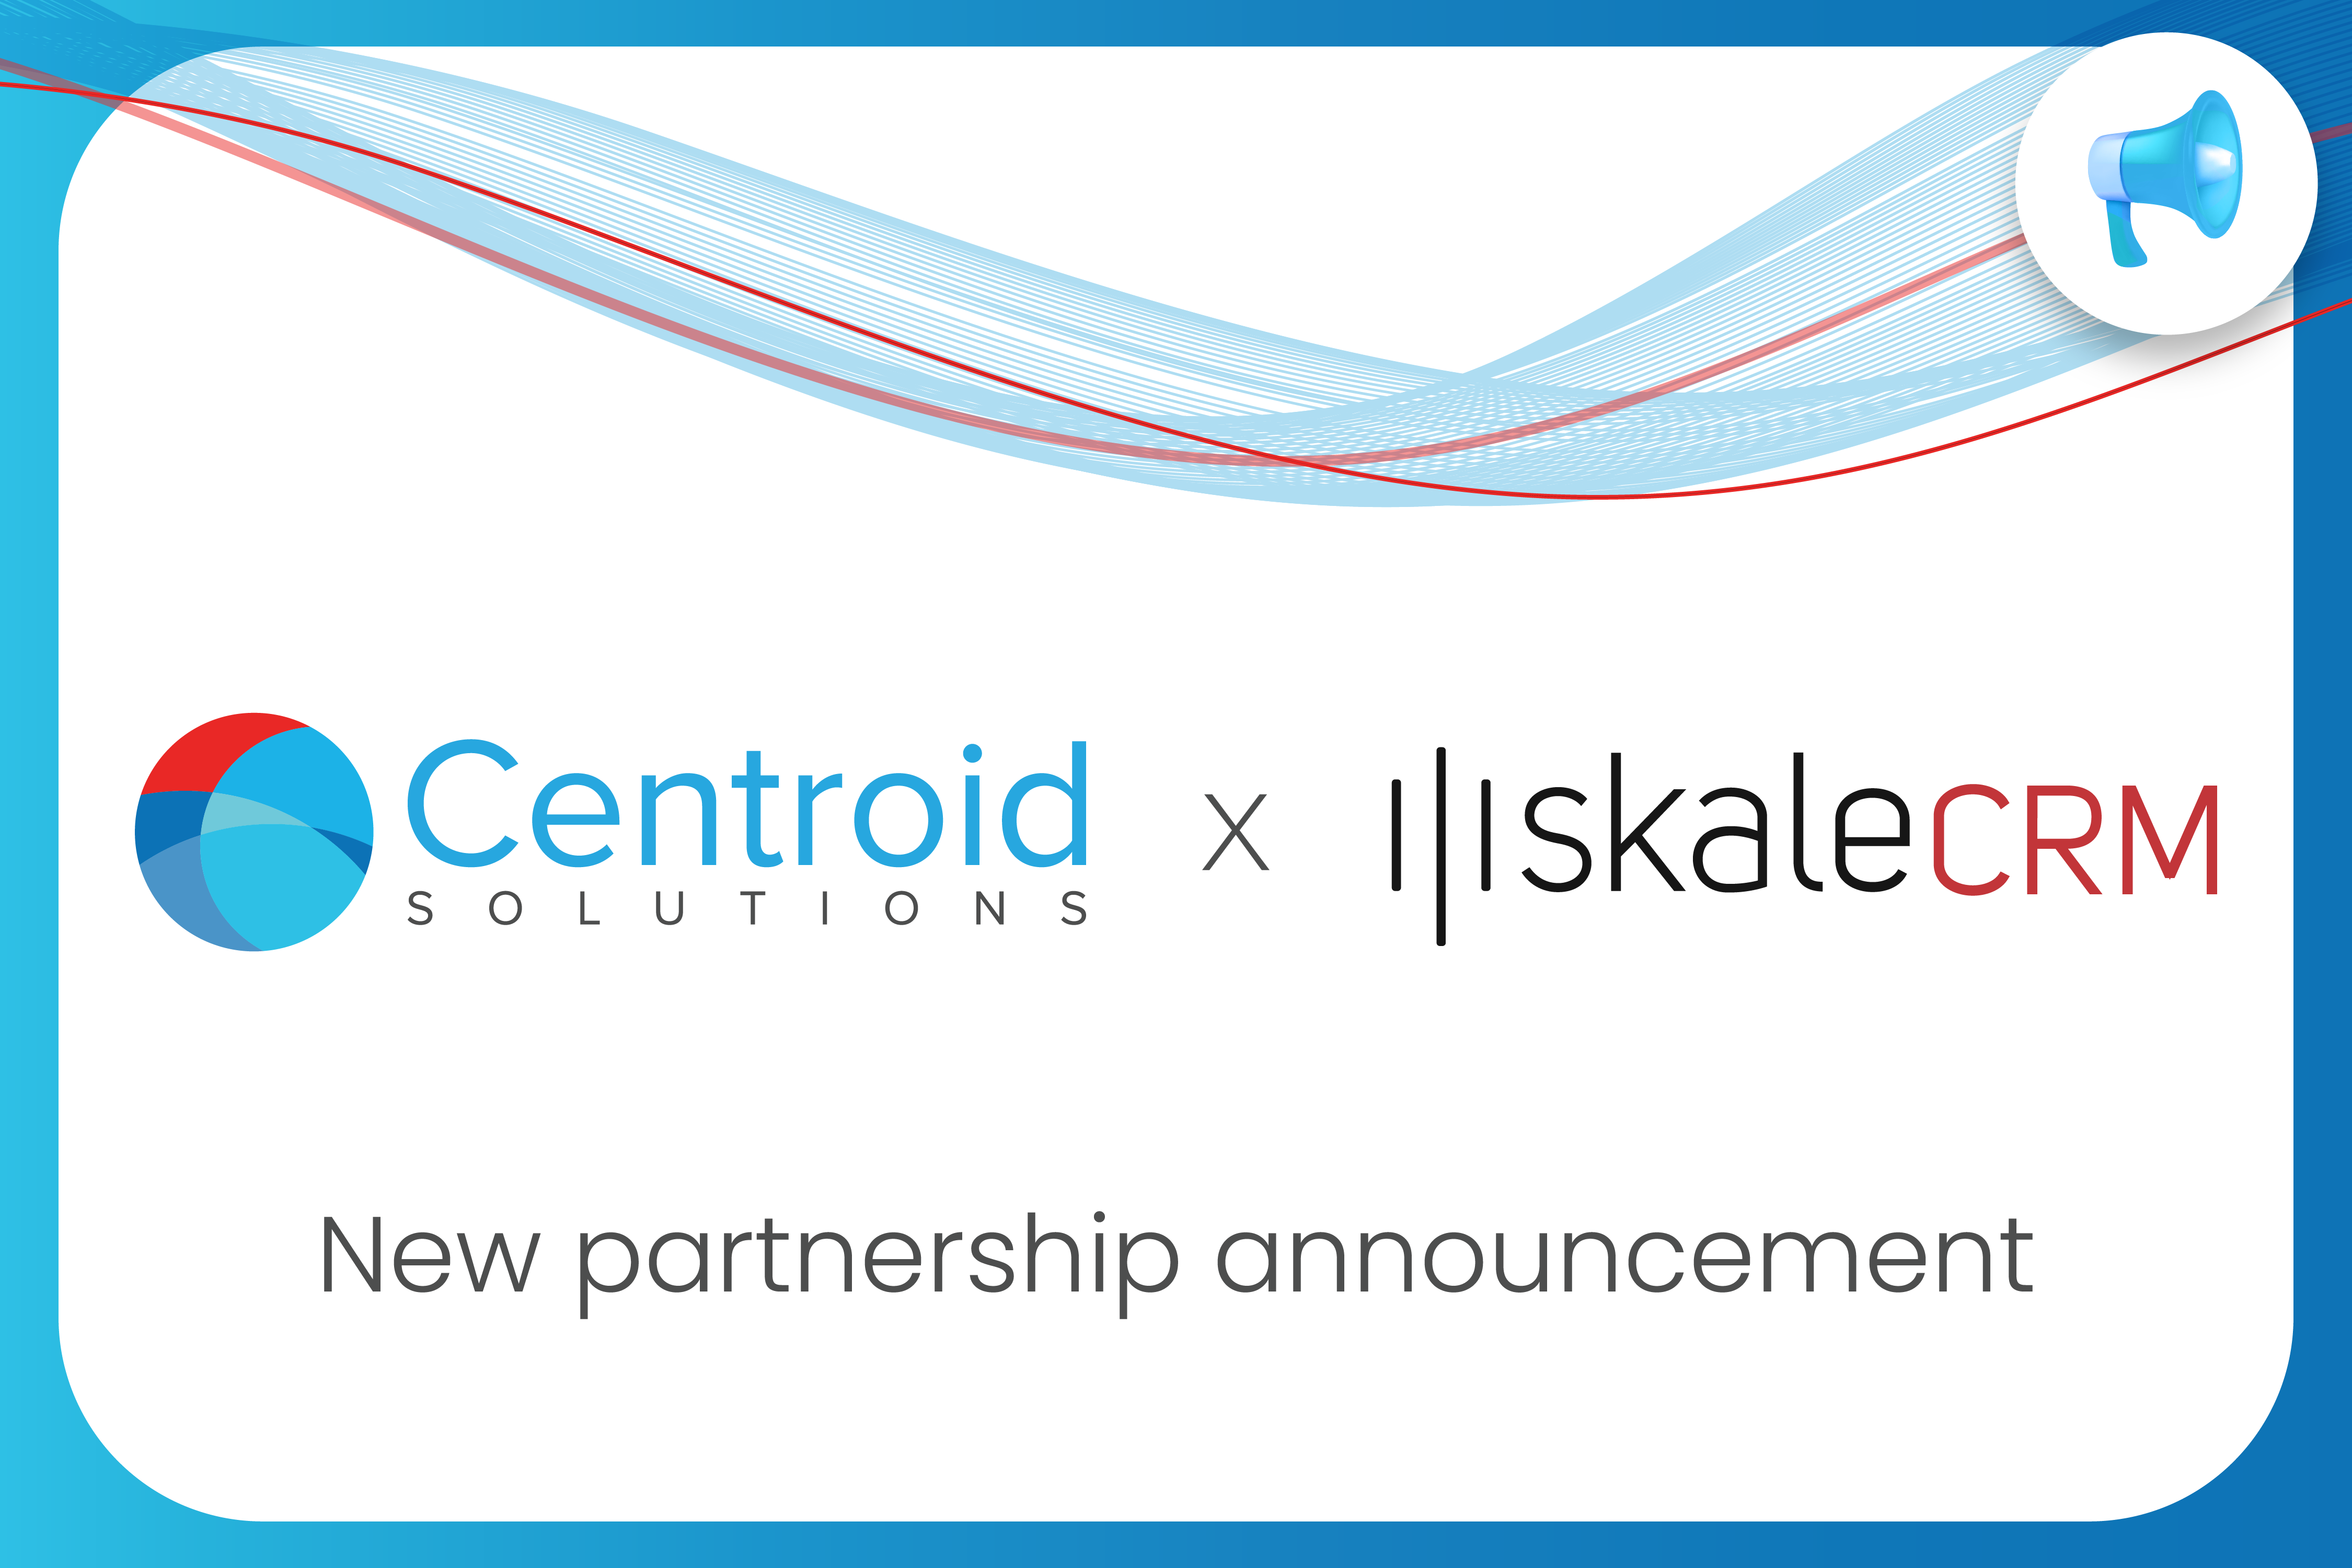 Centroid Solutions و Skale شريكان لتعزيز العروض المقدمة لوسطاء الفوركس